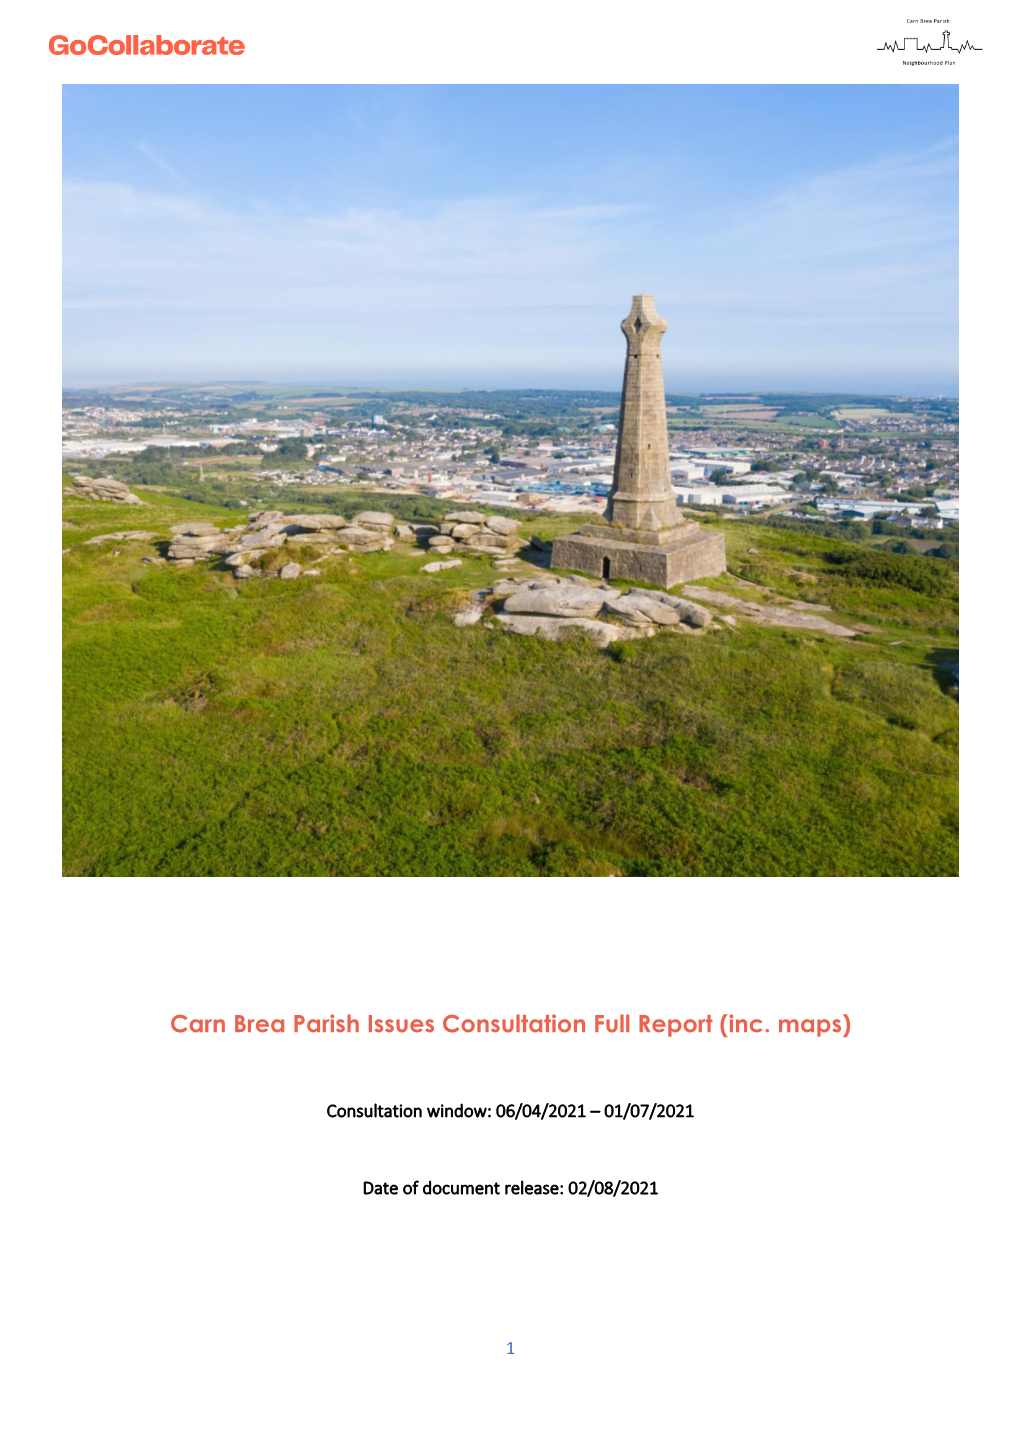 Carn Brea Parish Issues Consultation Full Report (Inc